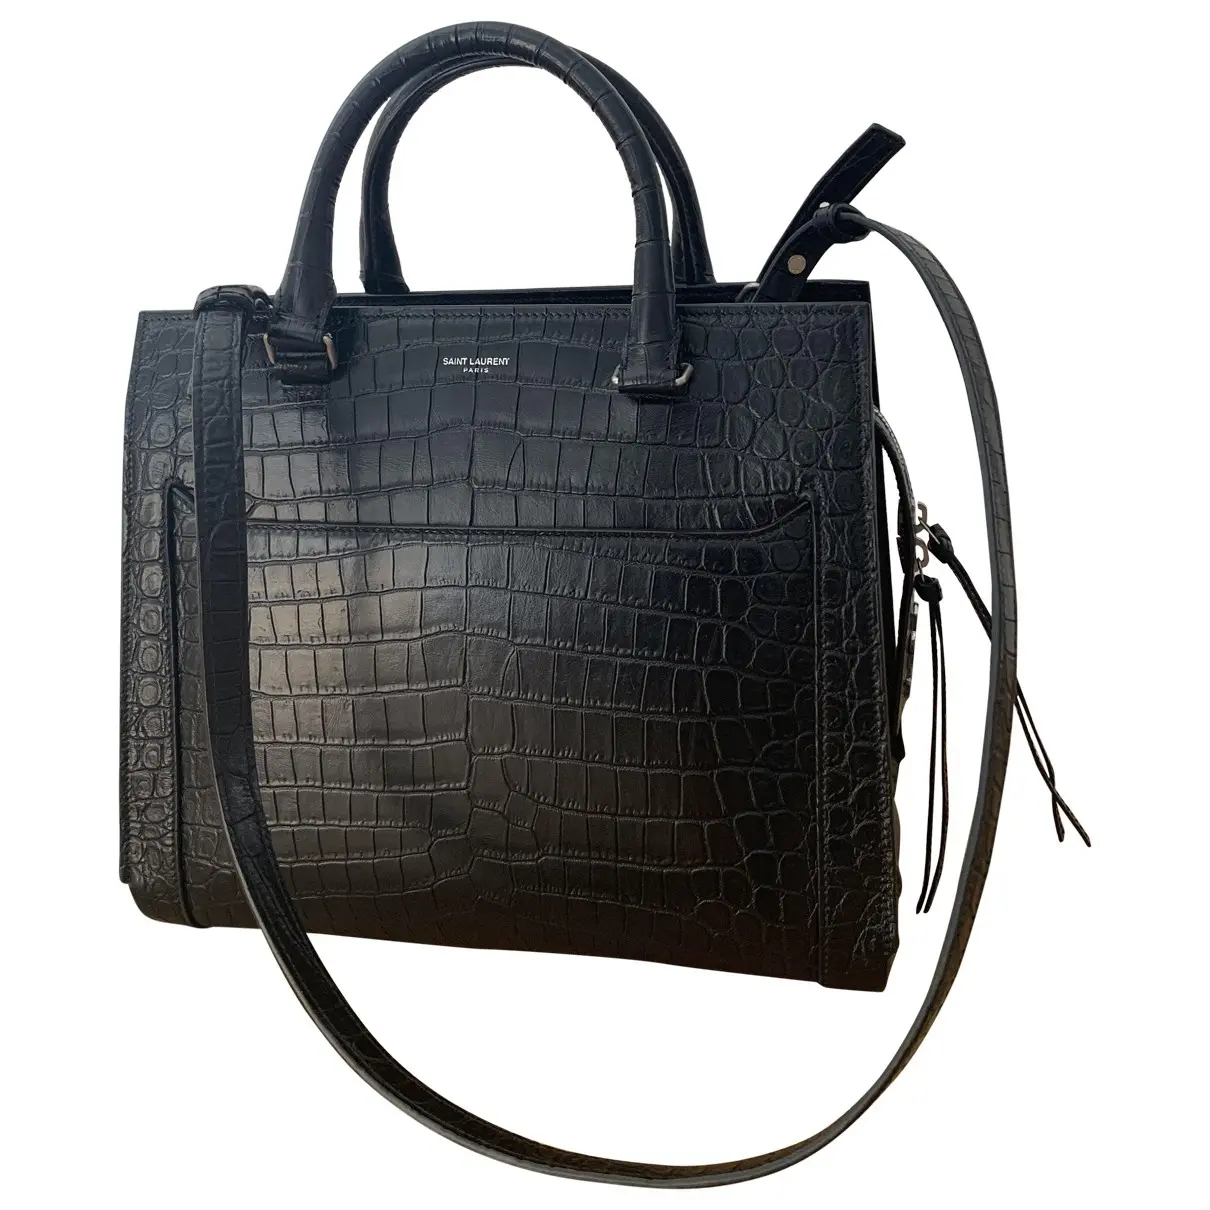 East Side leather handbag Saint Laurent